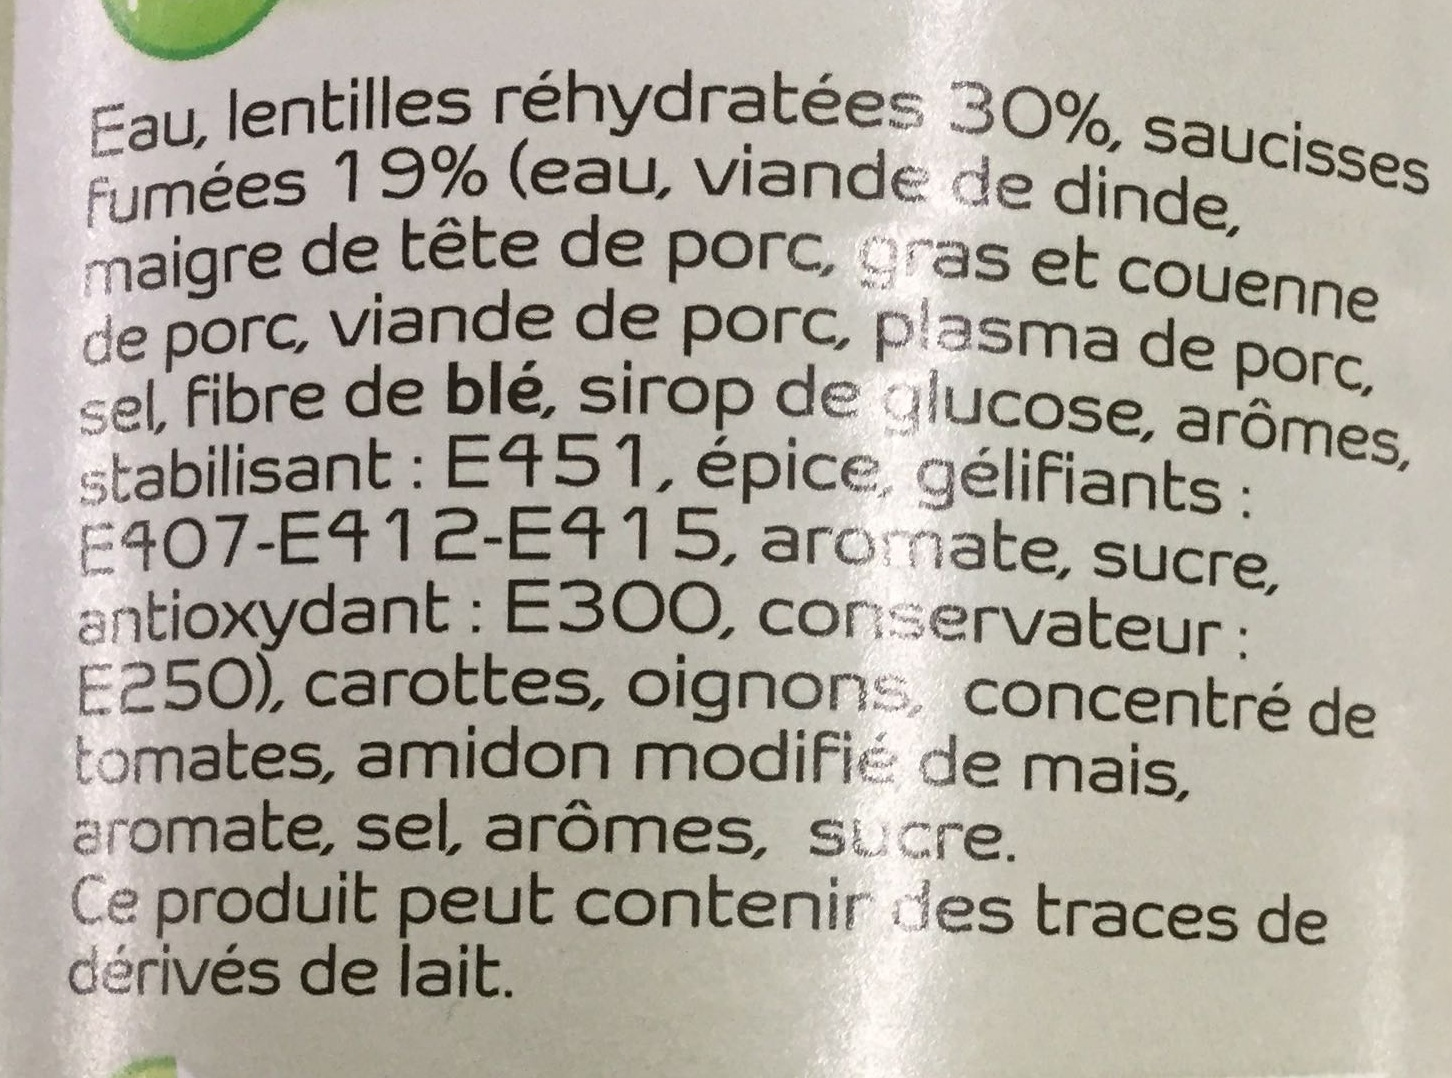 Saucisse aux lentilles - Ingredients - fr